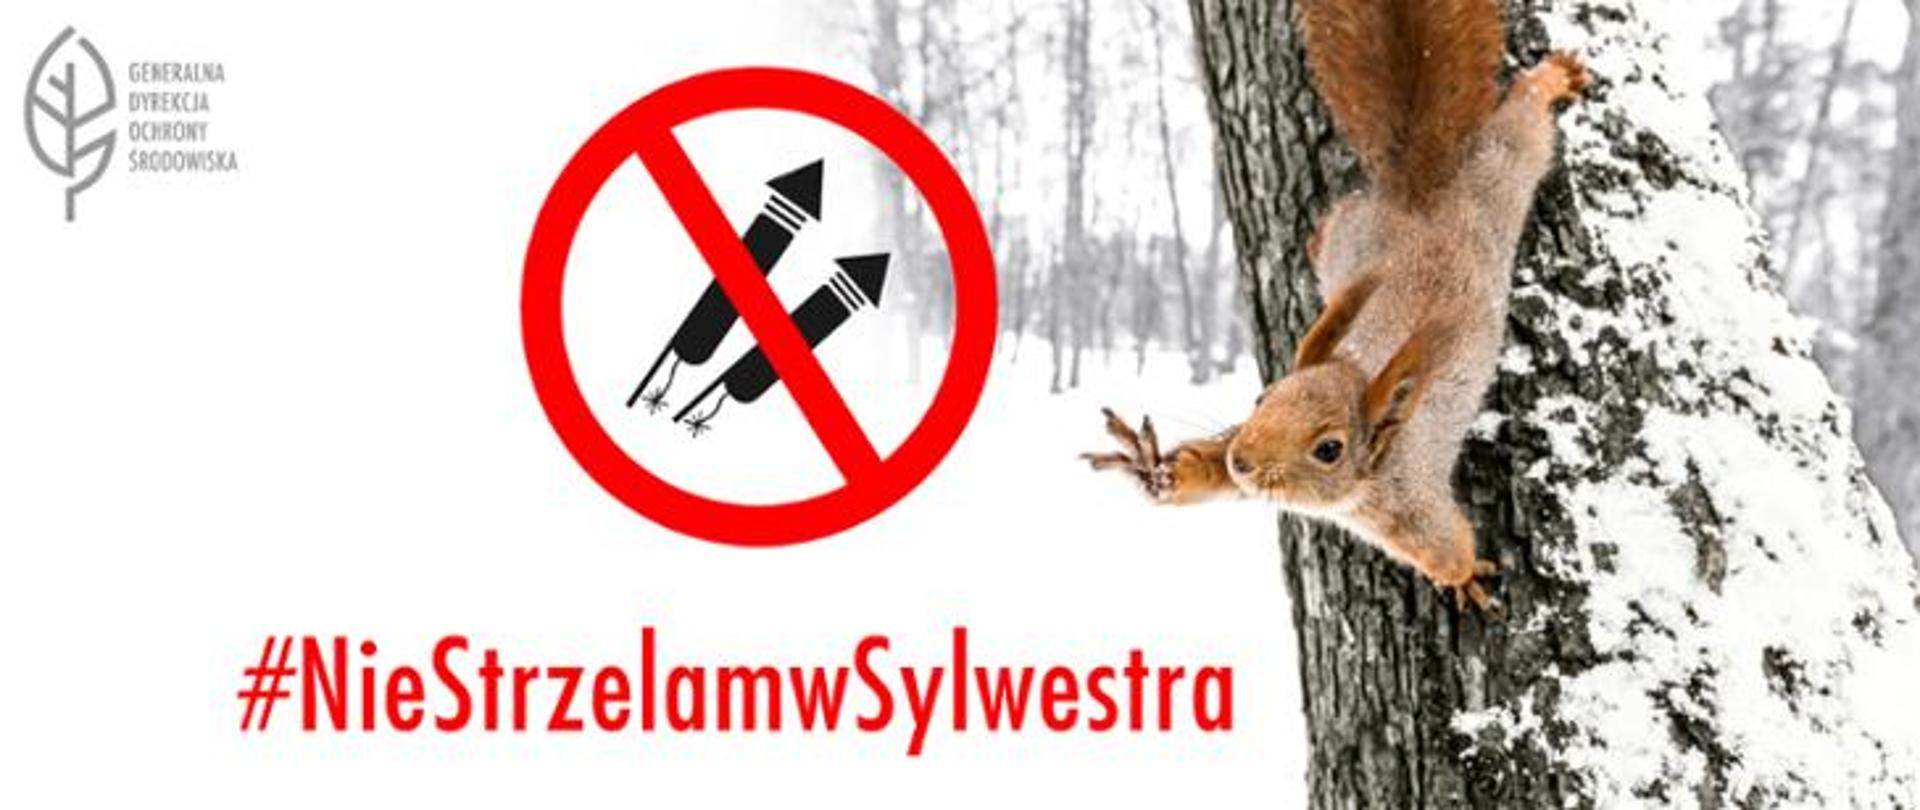 Napis: #Niestrzelamwsylwestra przekreślona grafika petard. W tle wiewiórka spadająca z drzewa